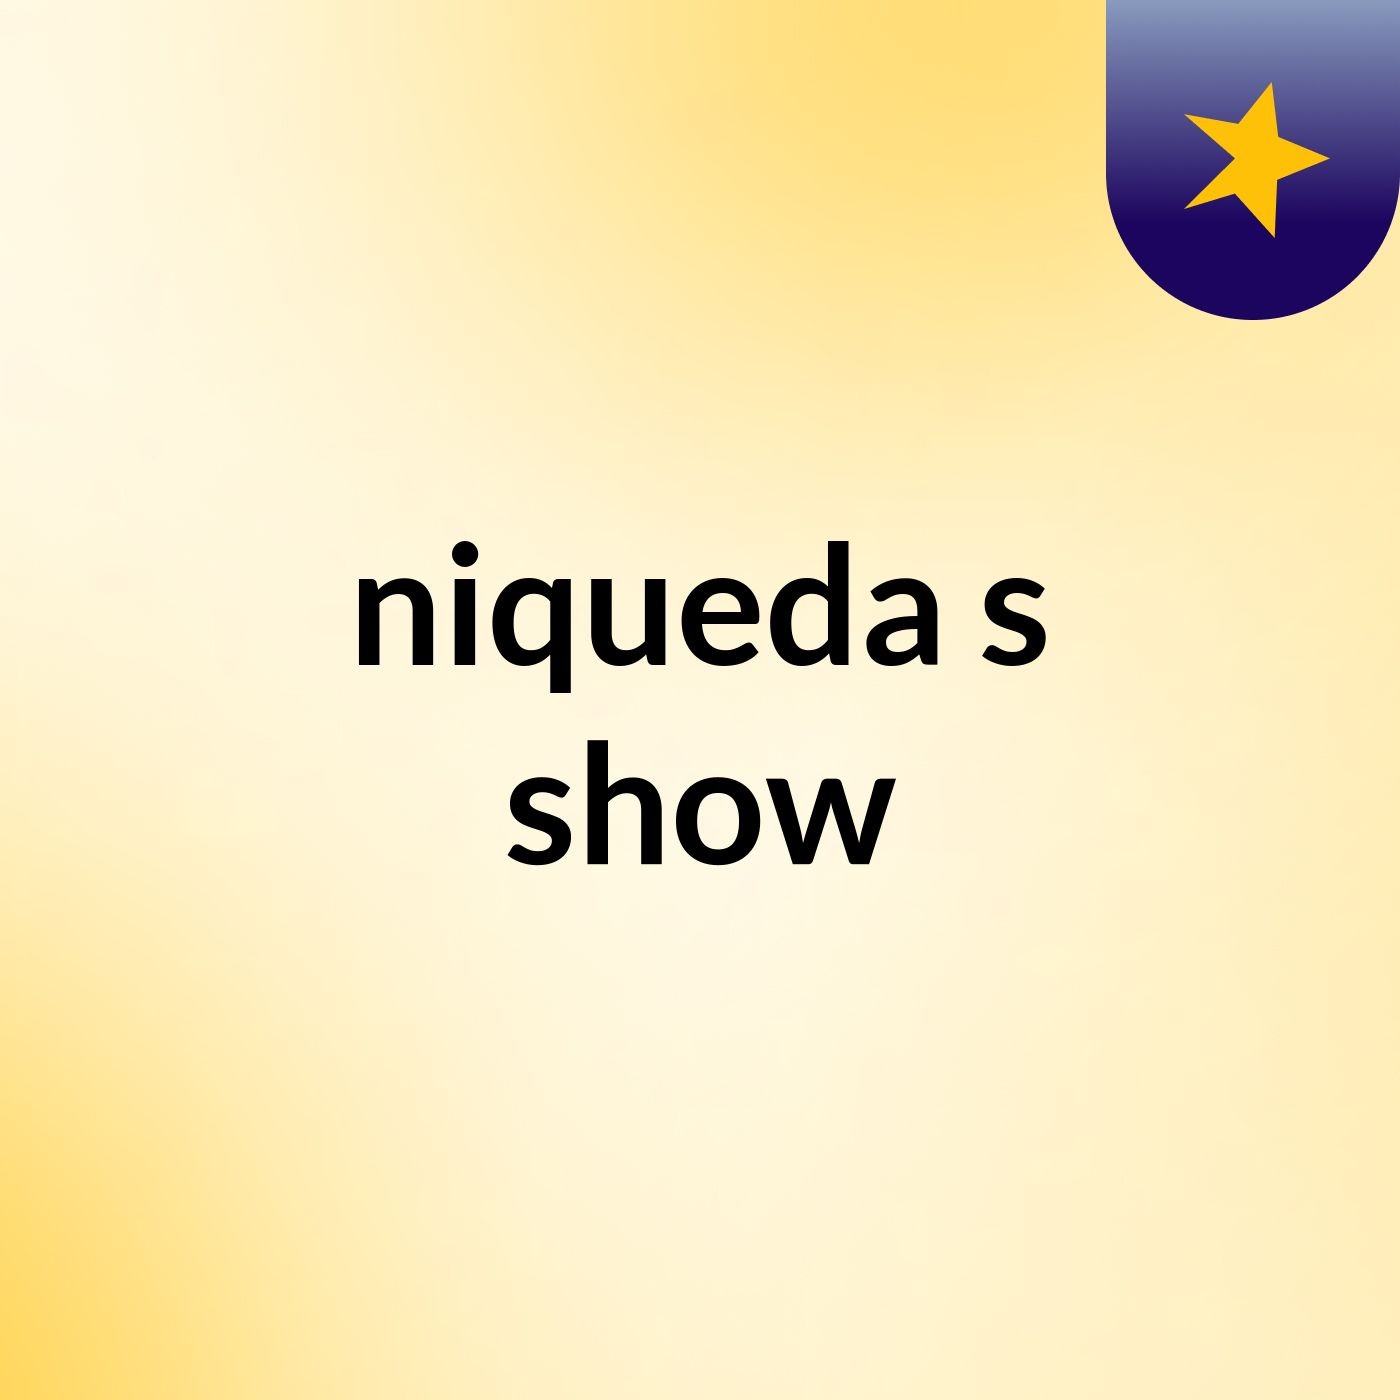 niqueda's show